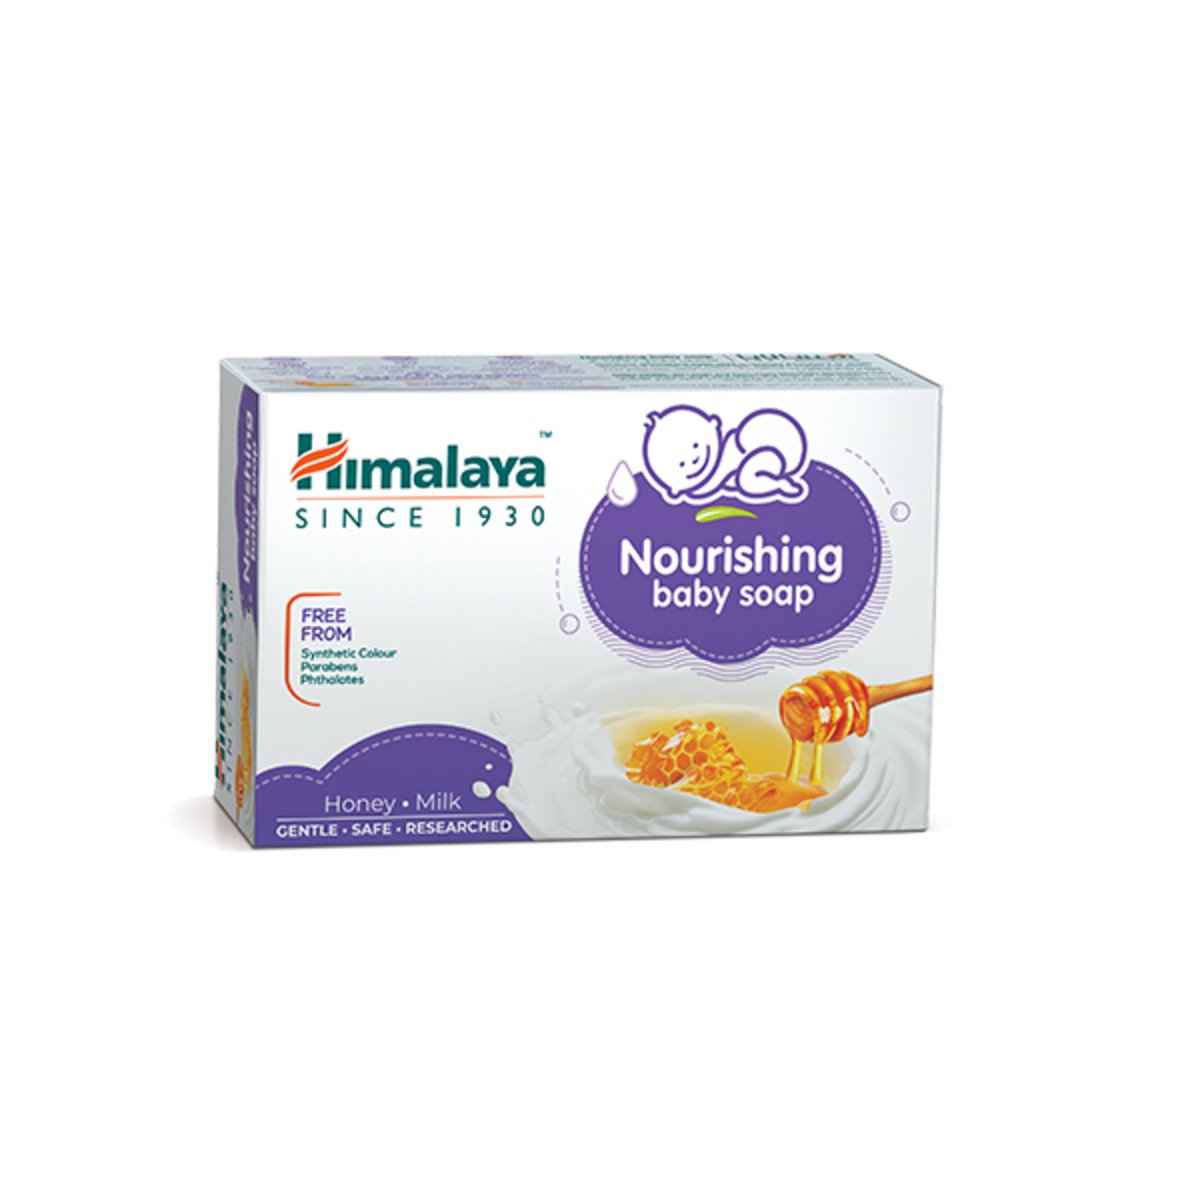 Buy Himalaya Nourishing Baby Soap Milk & Honey 125 g Online at Best Price | Baby Soap | Lulu UAE in UAE